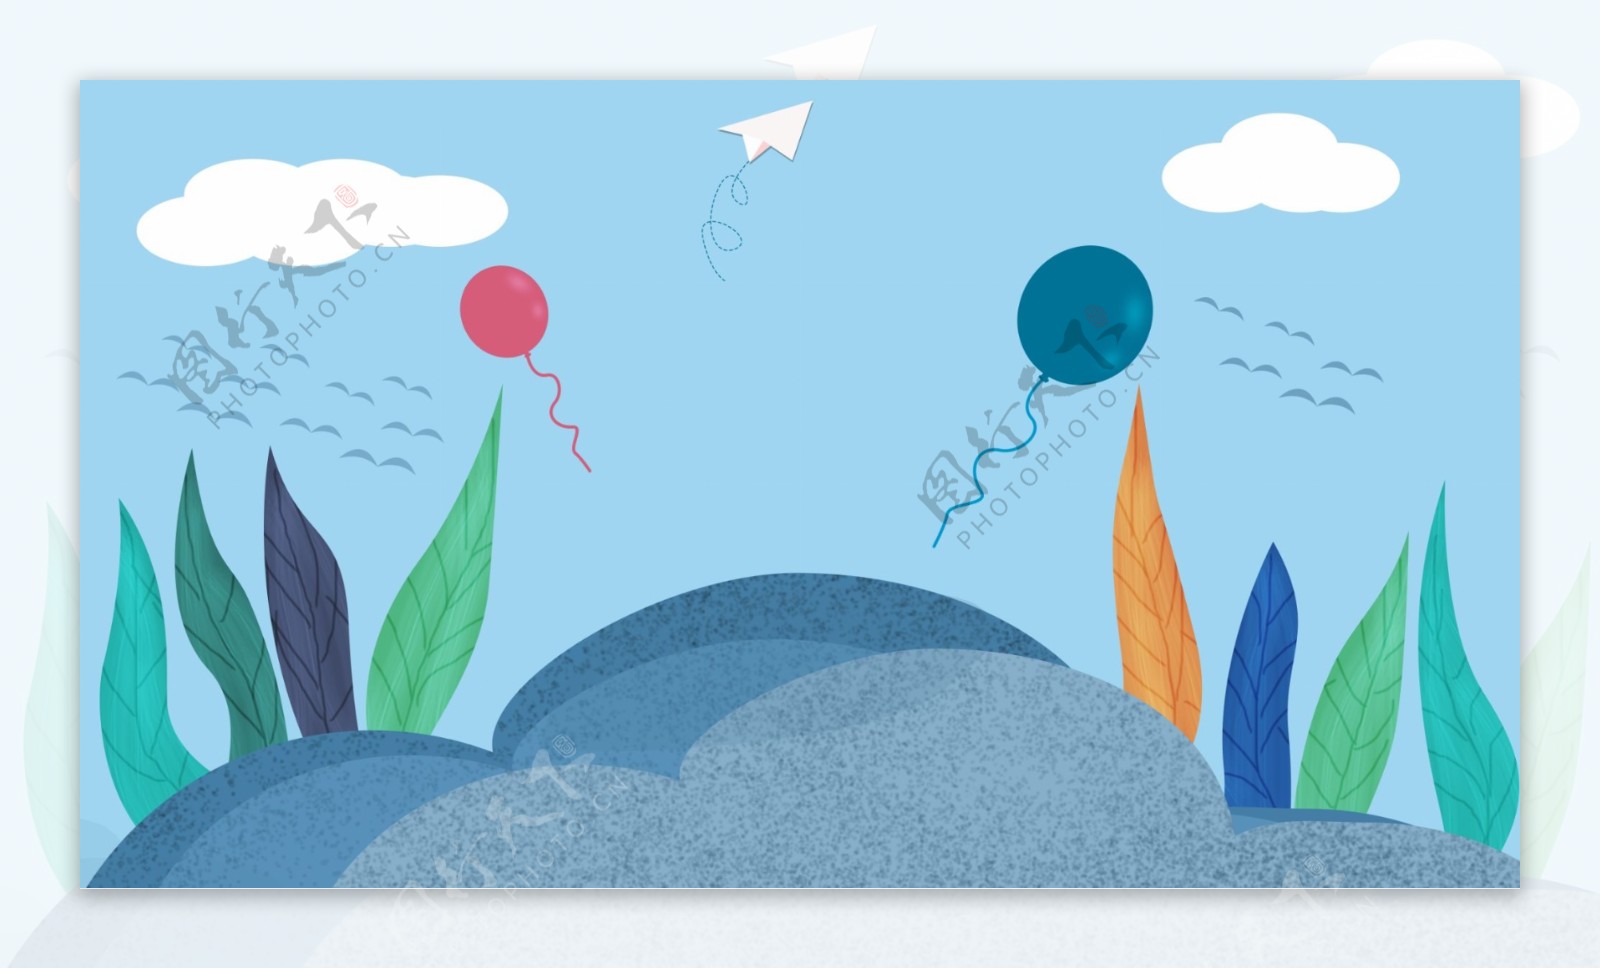 水彩叶子植物气球banner背景素材